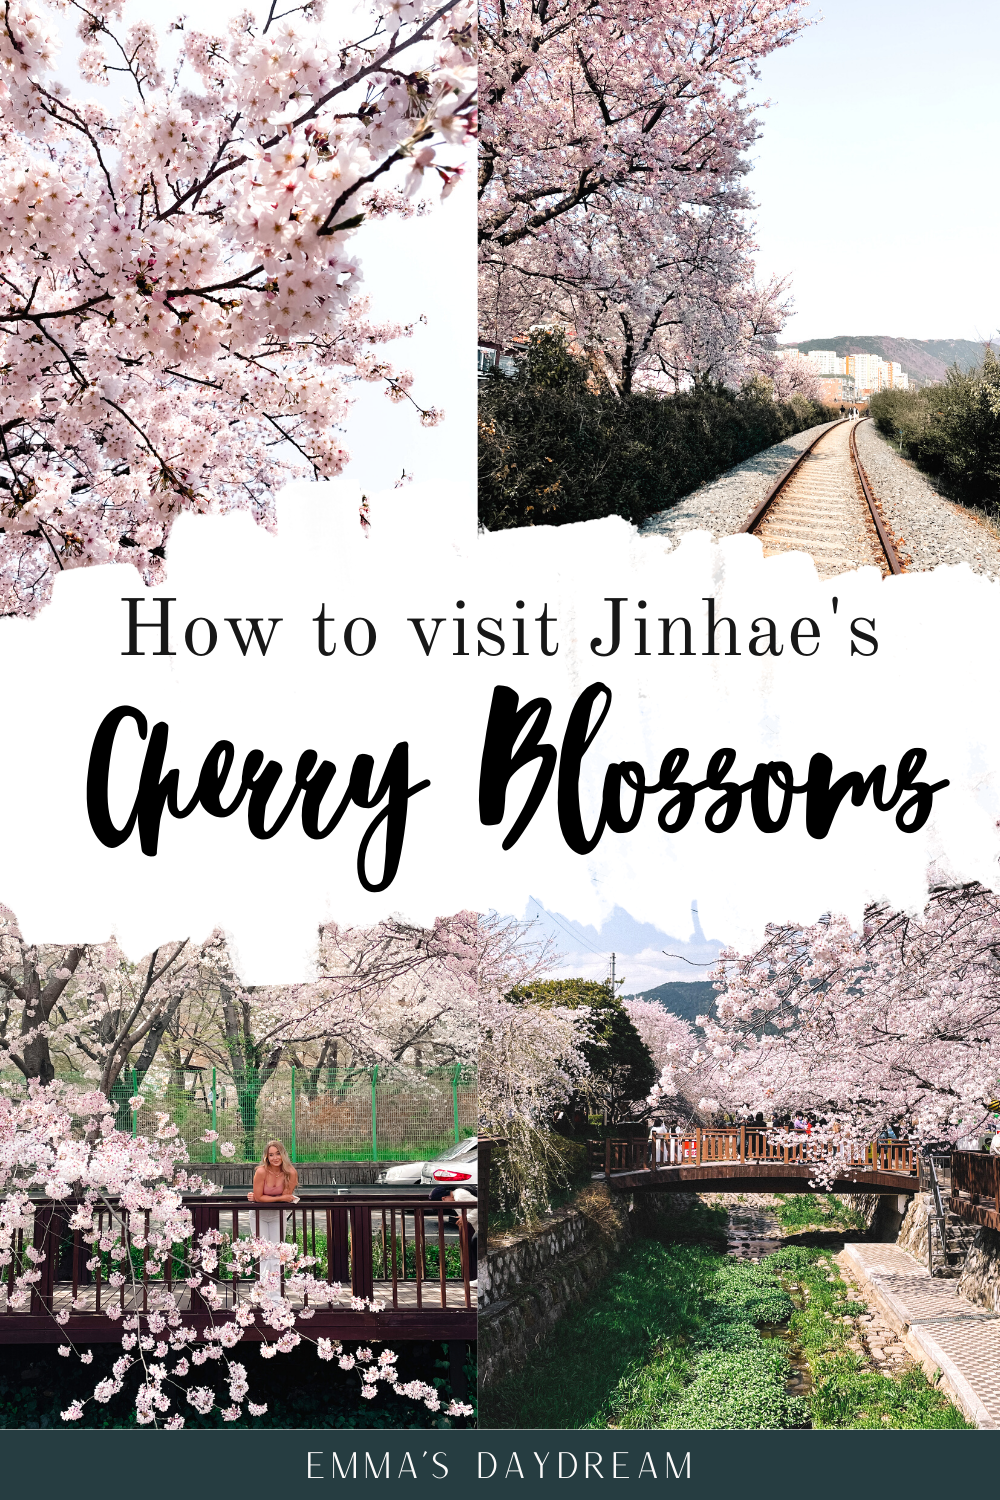 Jinhae Cherry Blossom Festival 